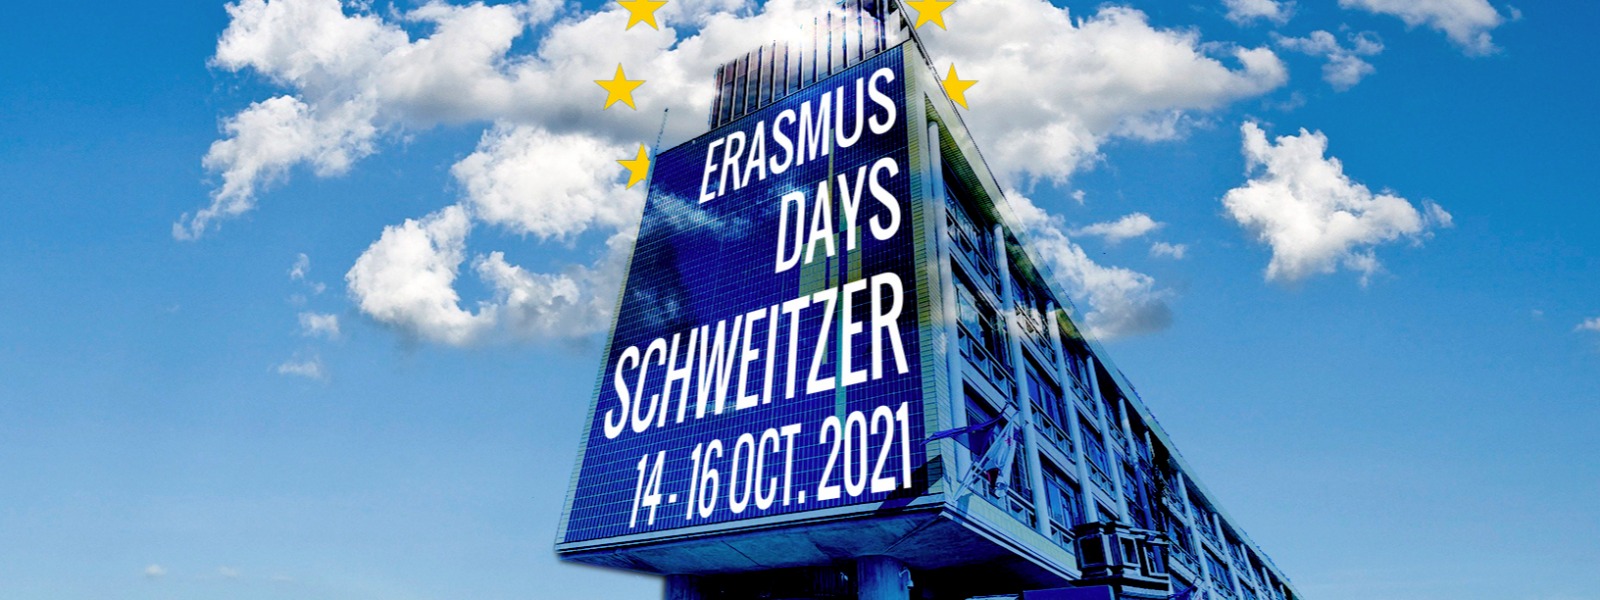 Erasmus Days 2021 at the Schweitzer high school